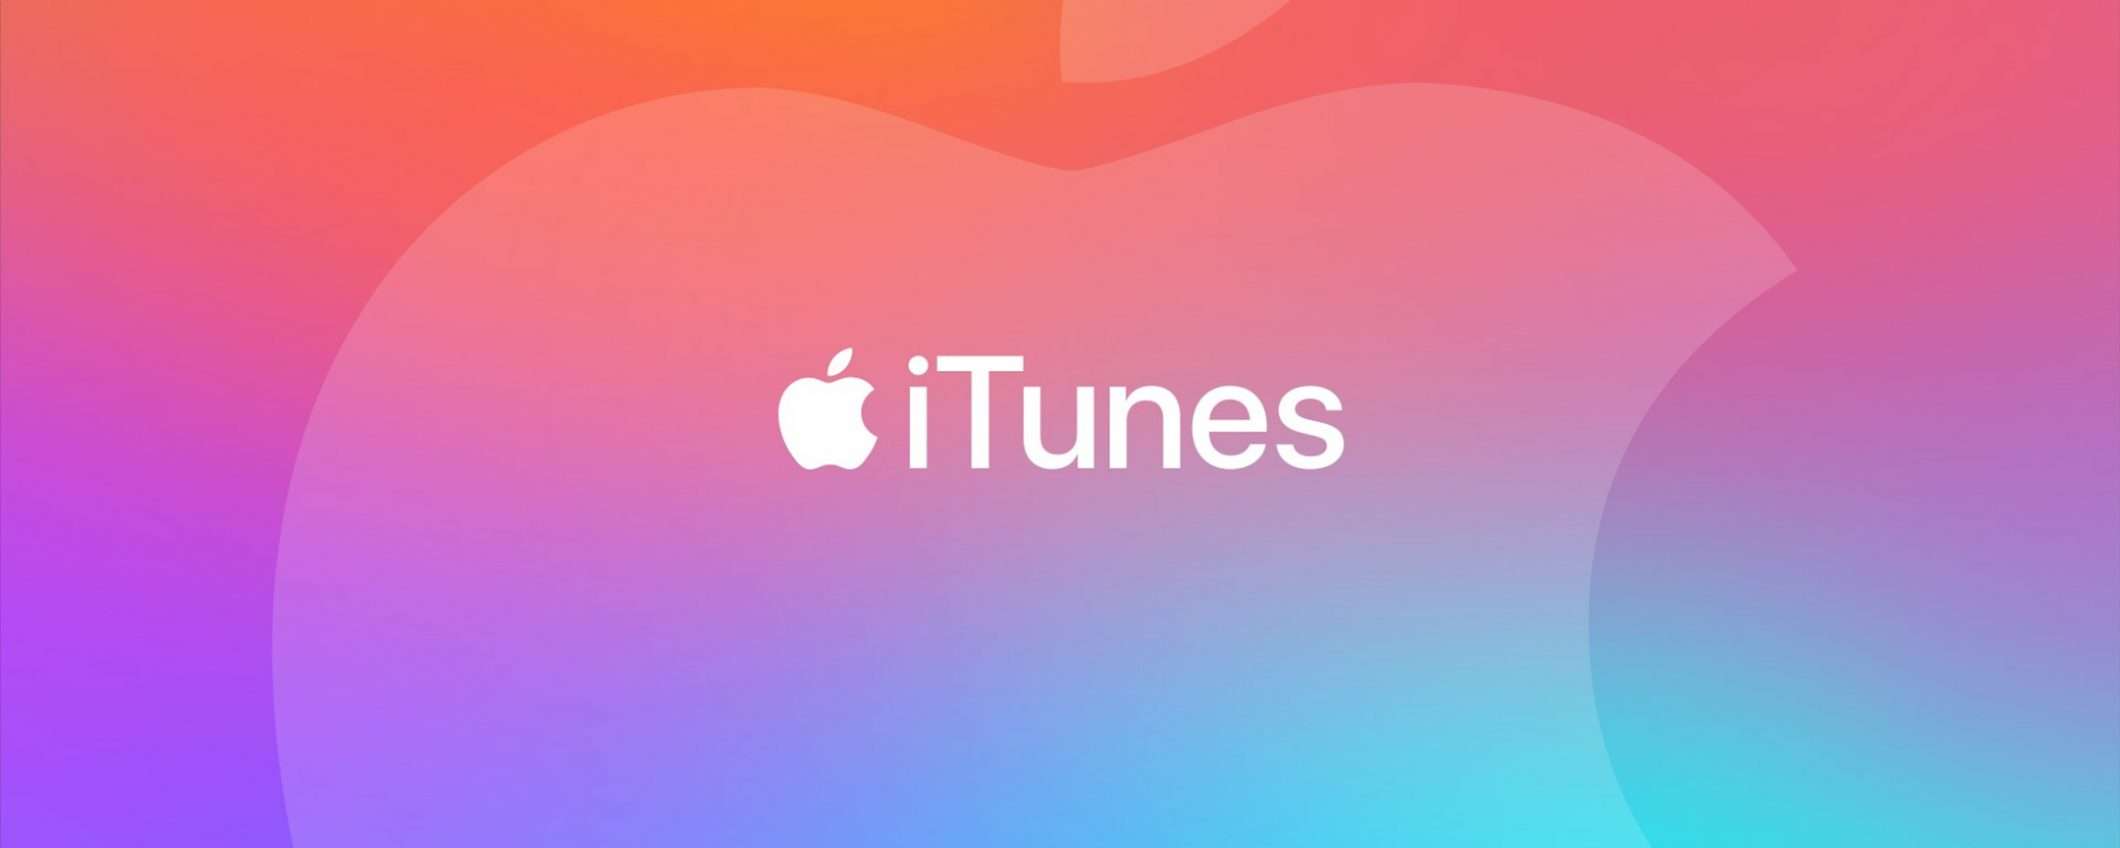 È giunto il momento dell'addio per iTunes?